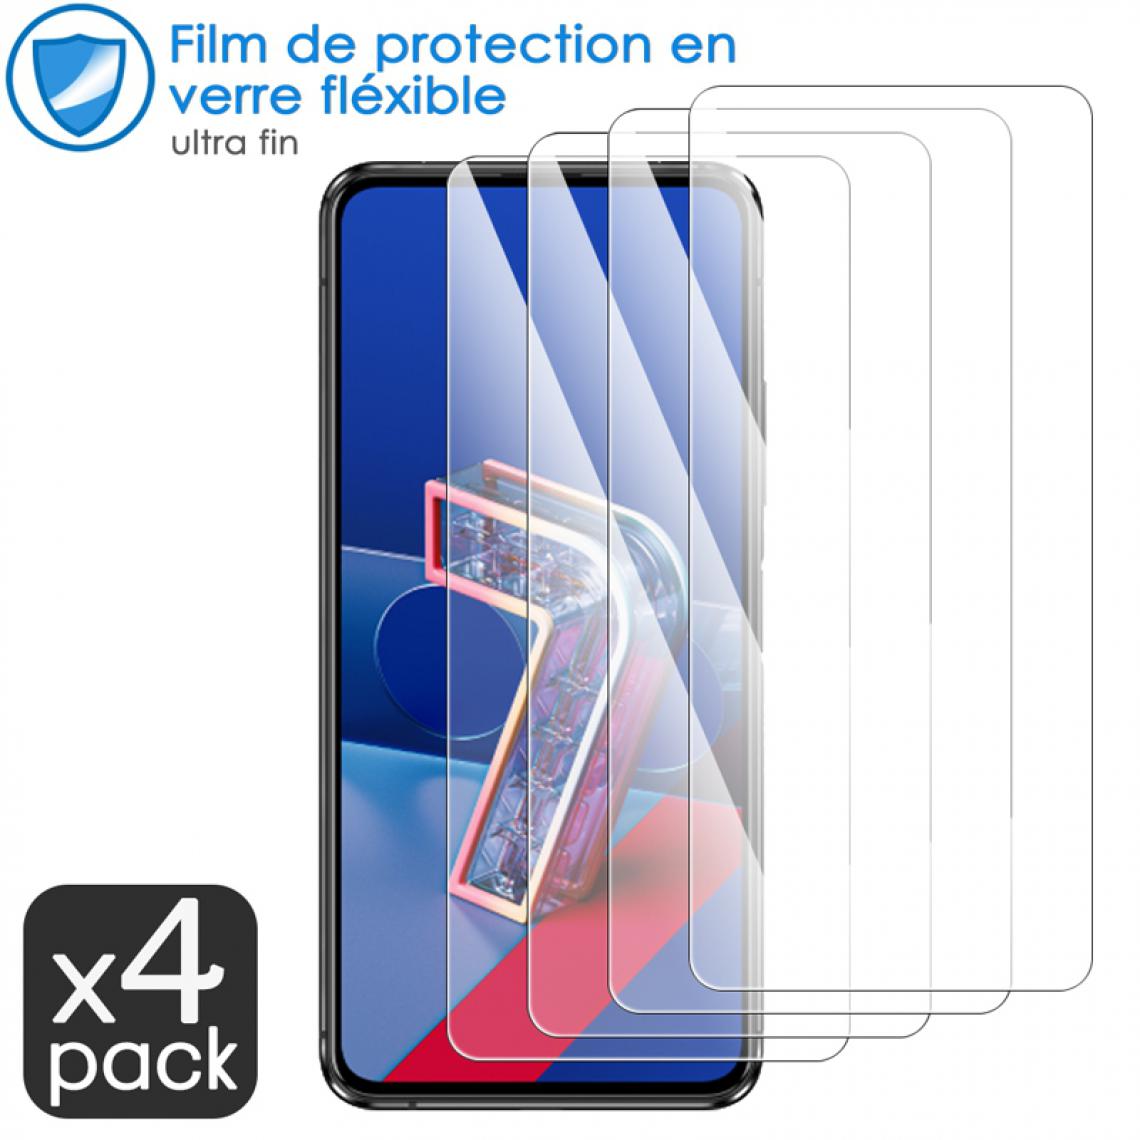 Karylax - Film de Protection d'écran en Verre Fléxible Dureté 9H pour UMIDIGI S5 Pro (Pack x4) - Protection écran smartphone